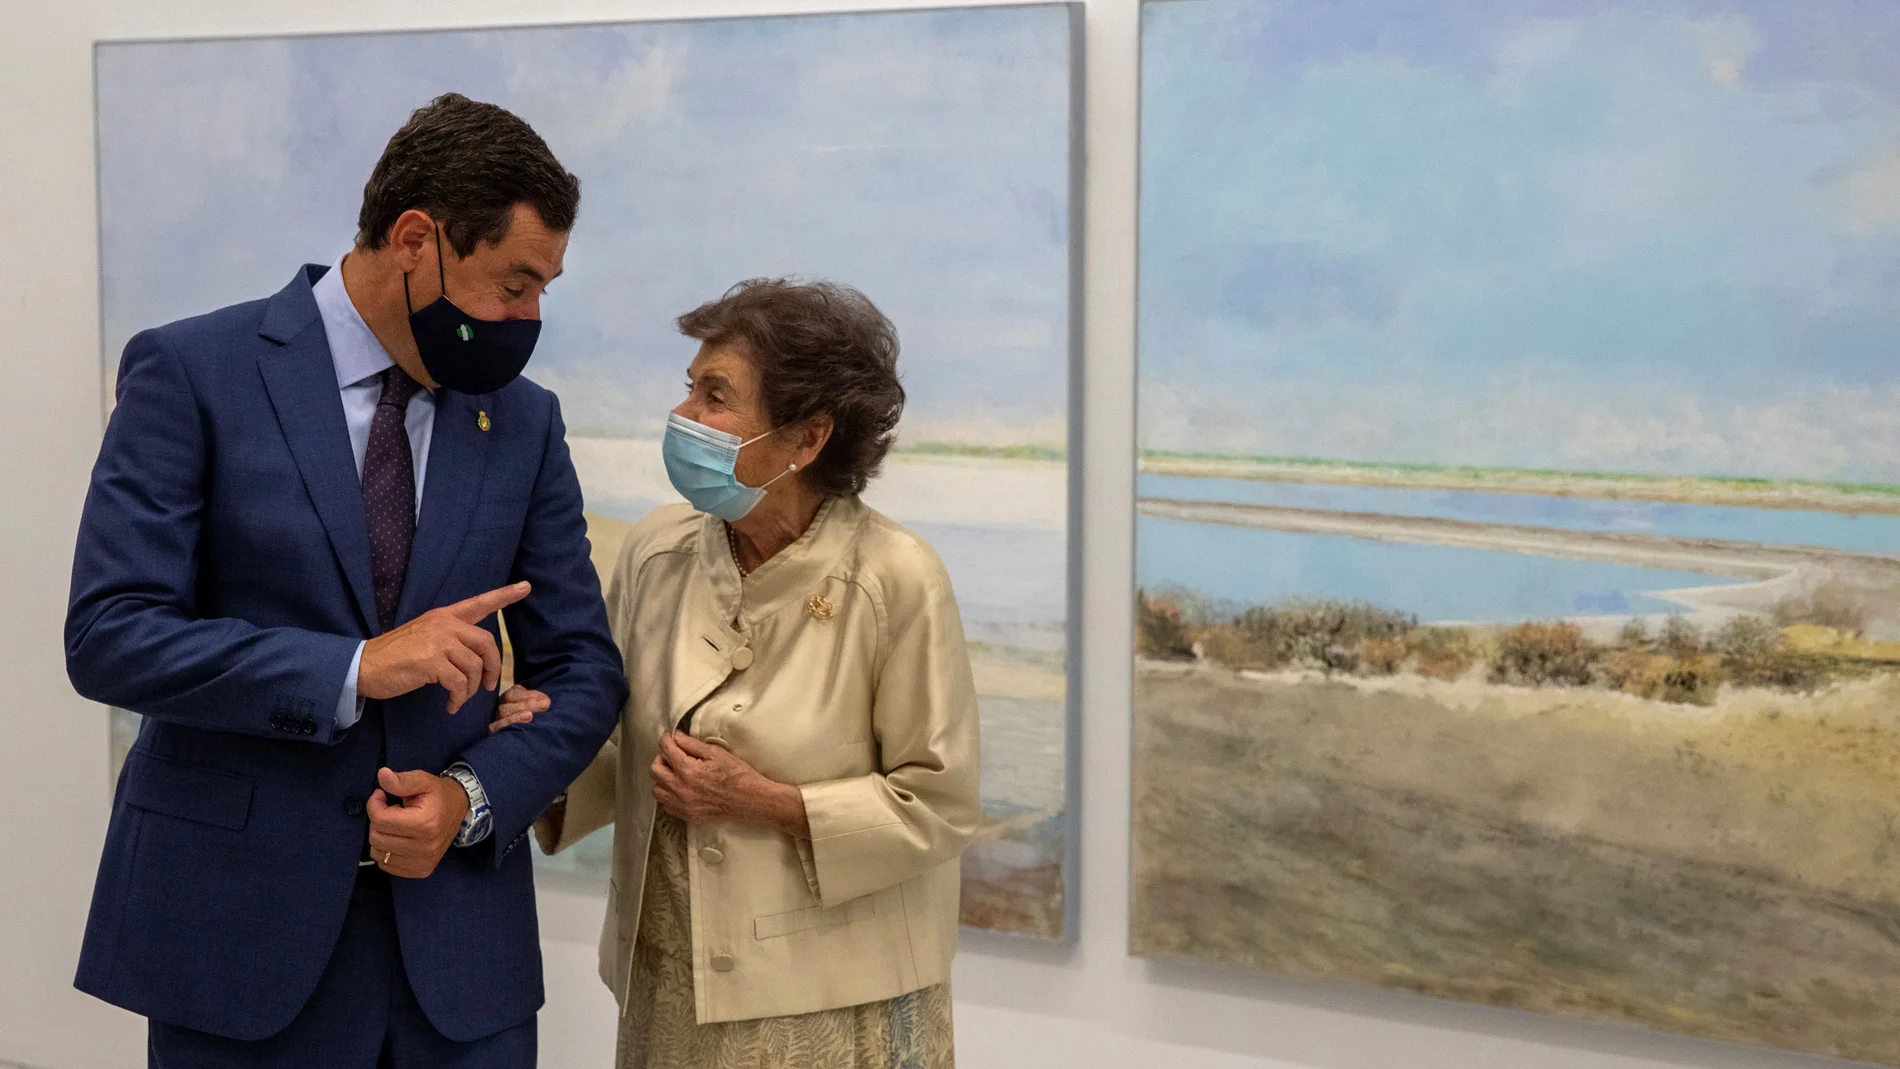 El presidente andaluz, Juanma Moreno, y la pintora Carmen Laffón, conversan durante la inauguración de la muestra "La Sal", en el Centro Andaluz de Arte Contemporáneo de Sevilla